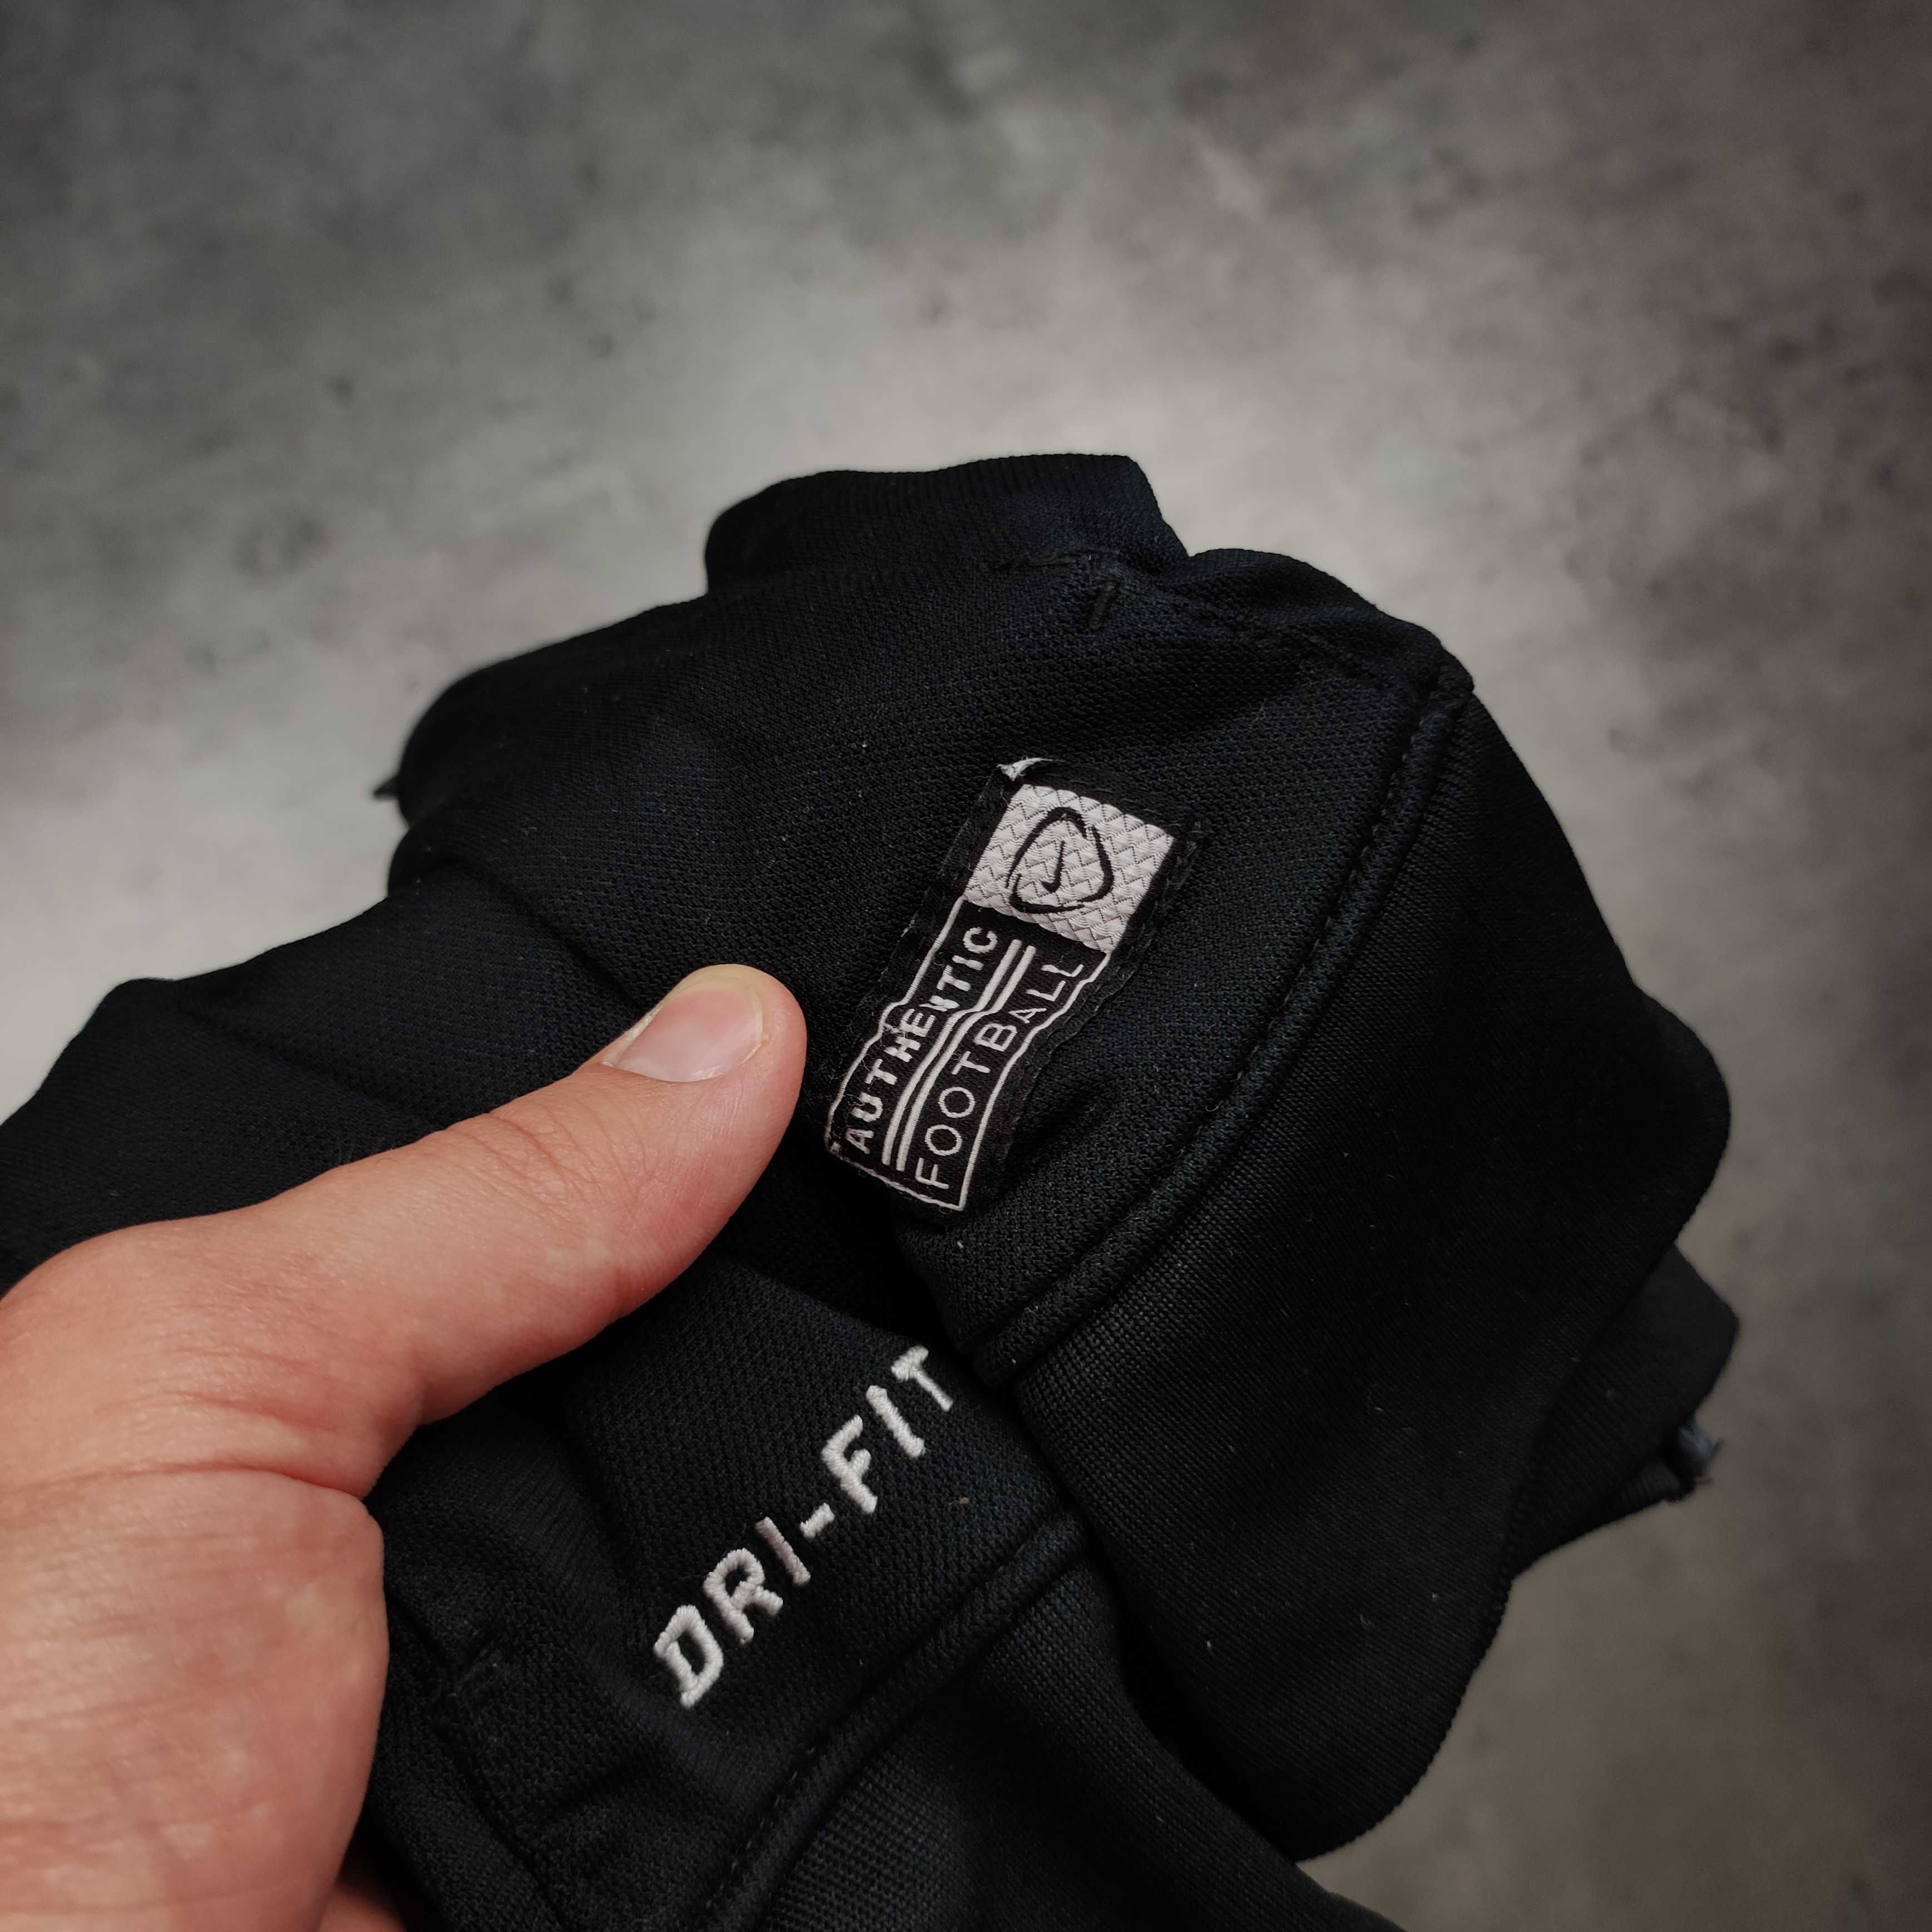 MĘSKA Bluza Sportowa Nike Czarna Nike Dri-Fit Rozpinana z Lampasem